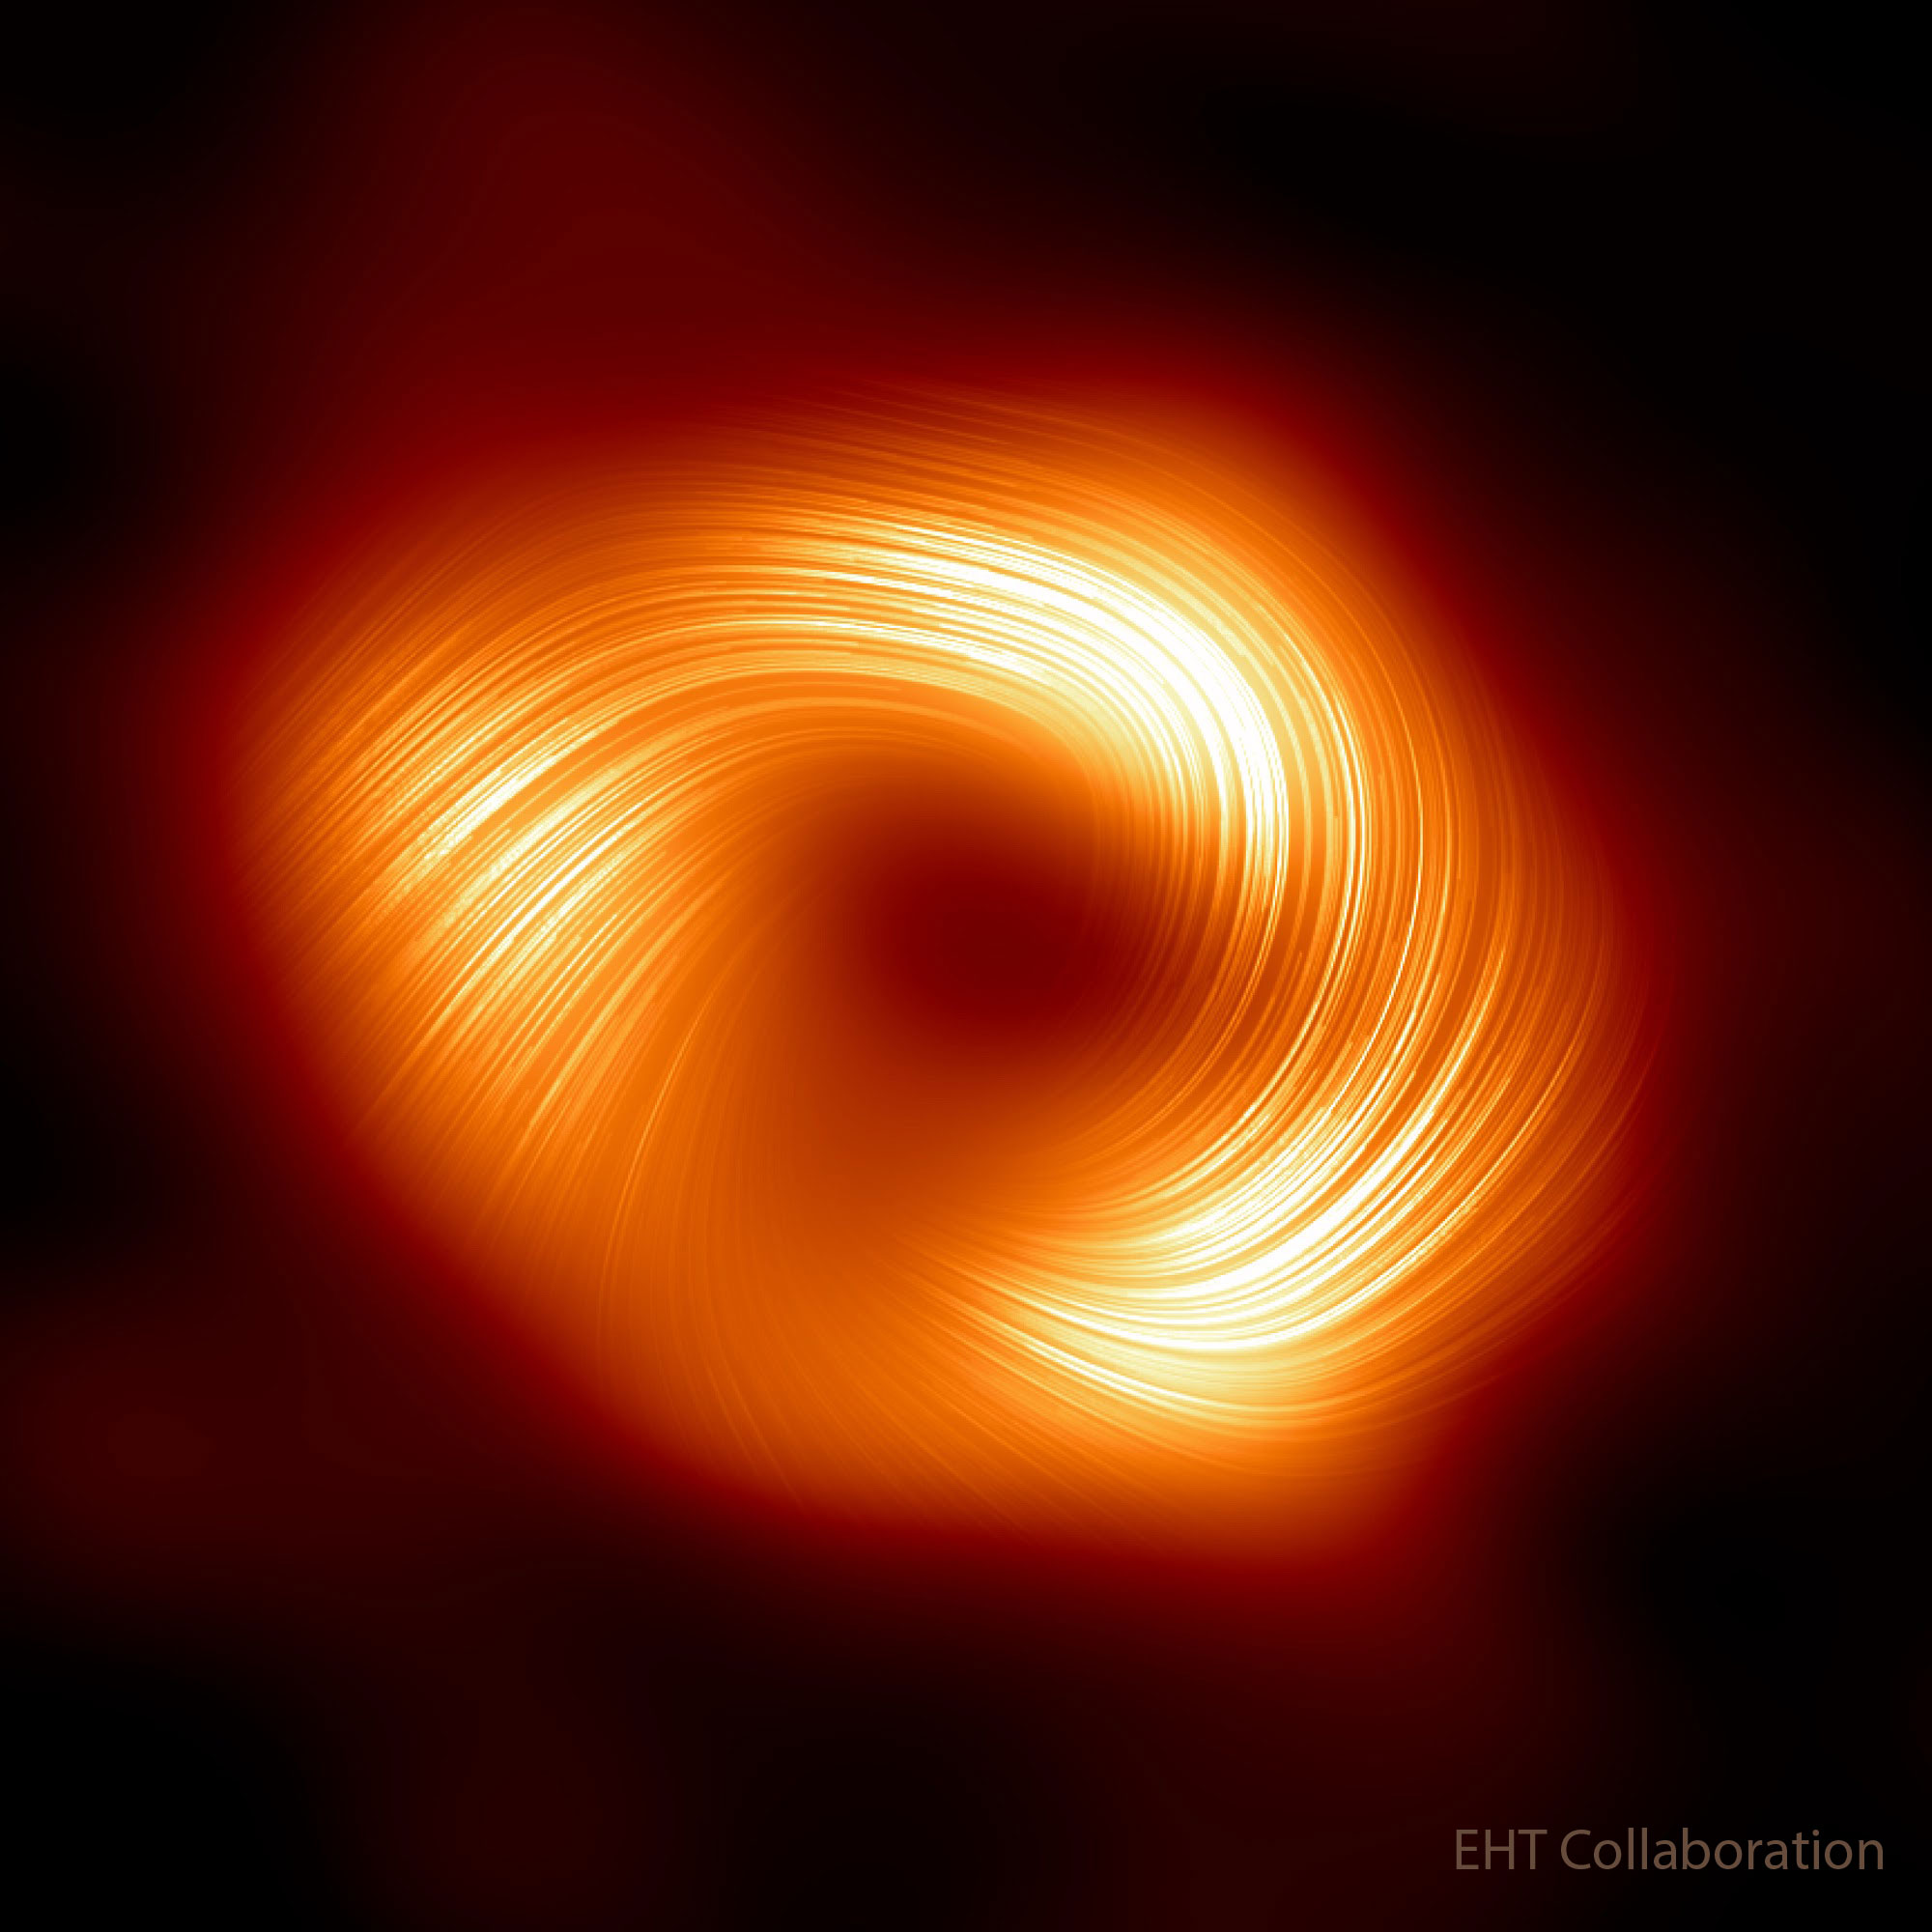 Campo magnético arremolinado en torno al agujero negro central de nuestra galaxia